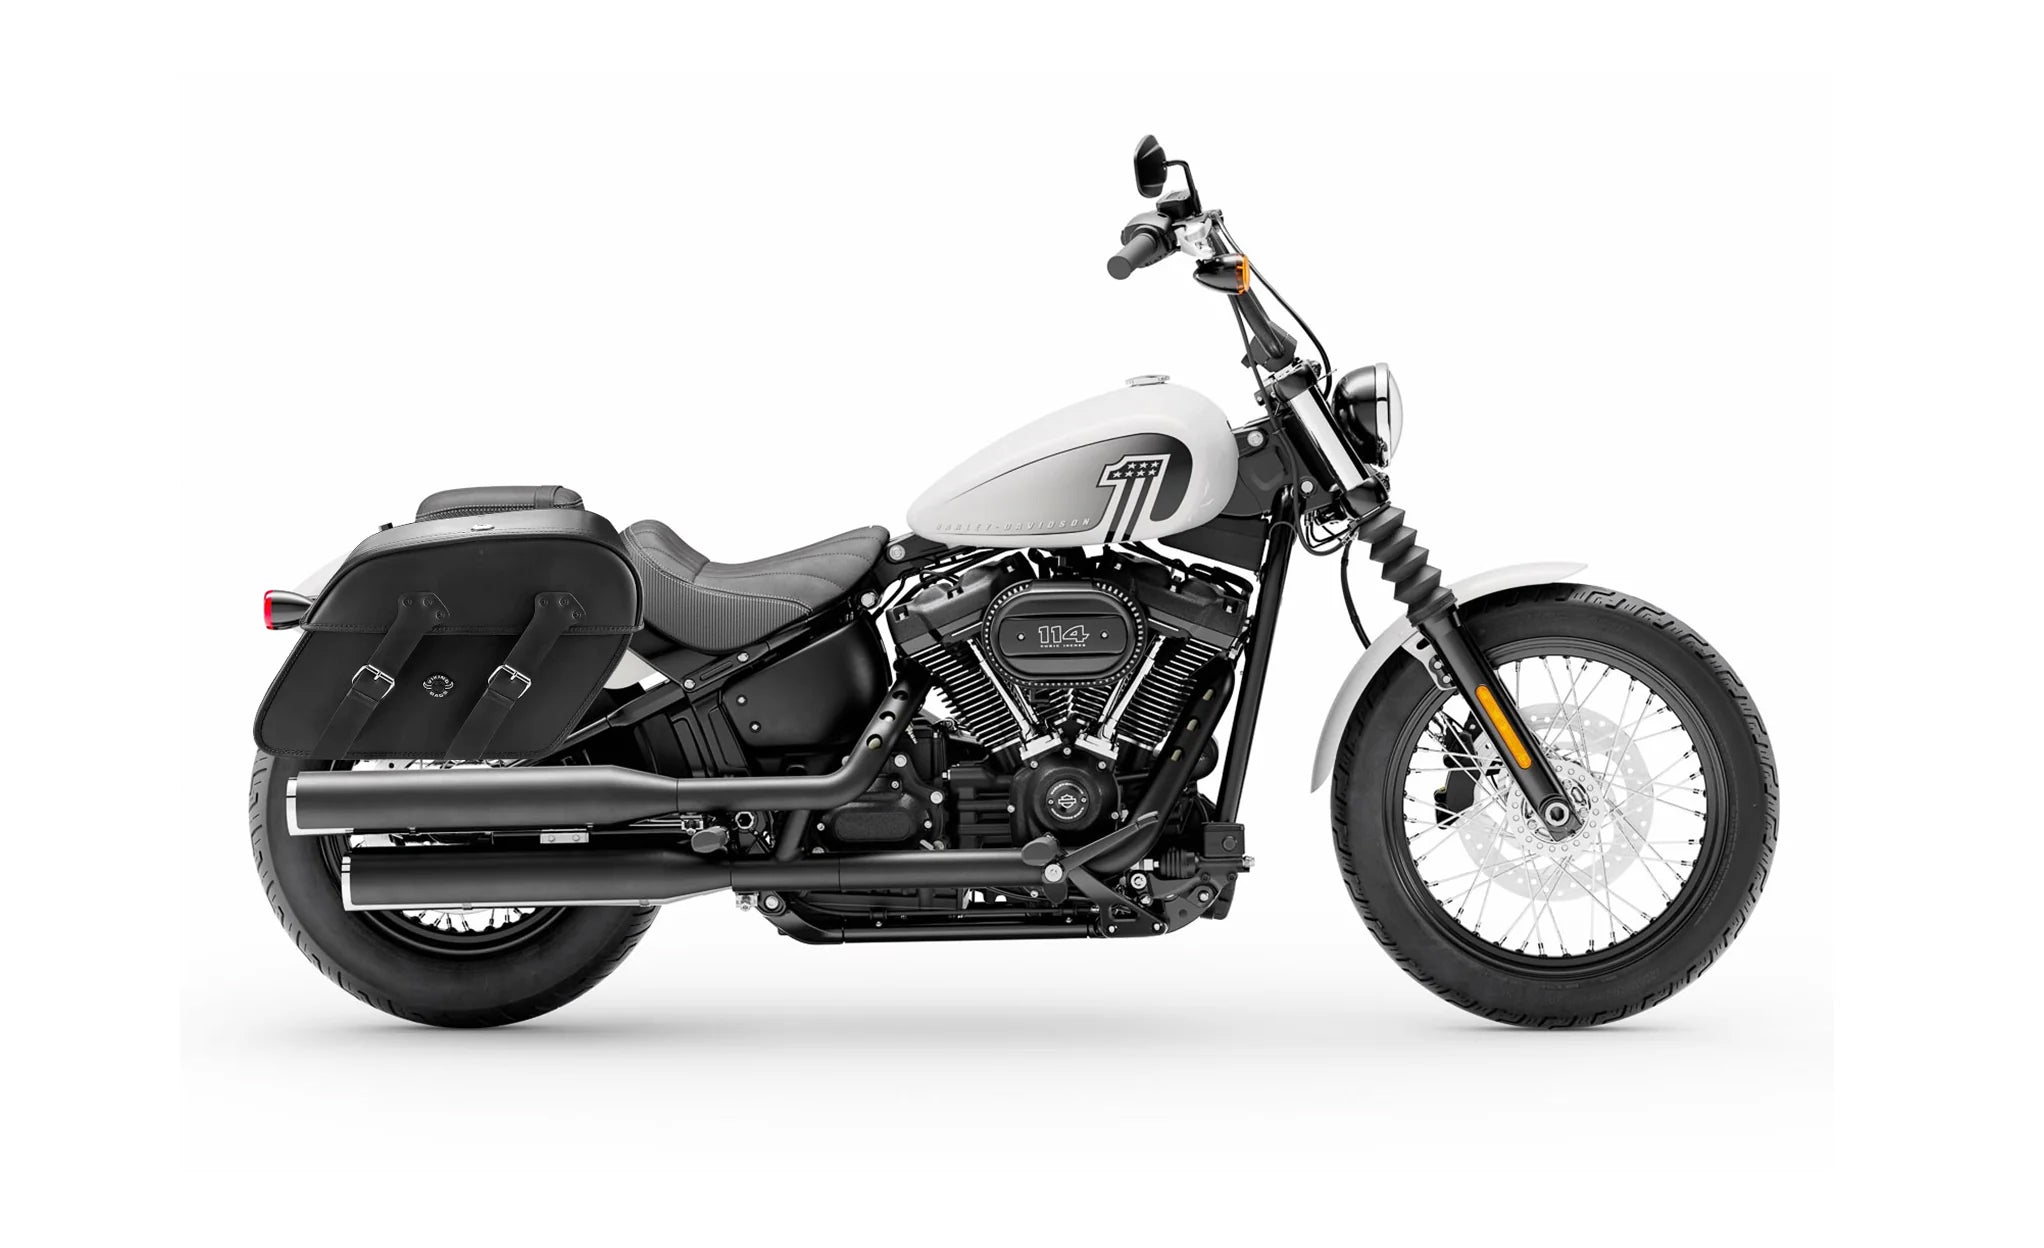 Viking Raven Extra Large Leather Motorcycle Saddlebags For Harley Softail Street Bob Fxbb on Bike Photo @expand